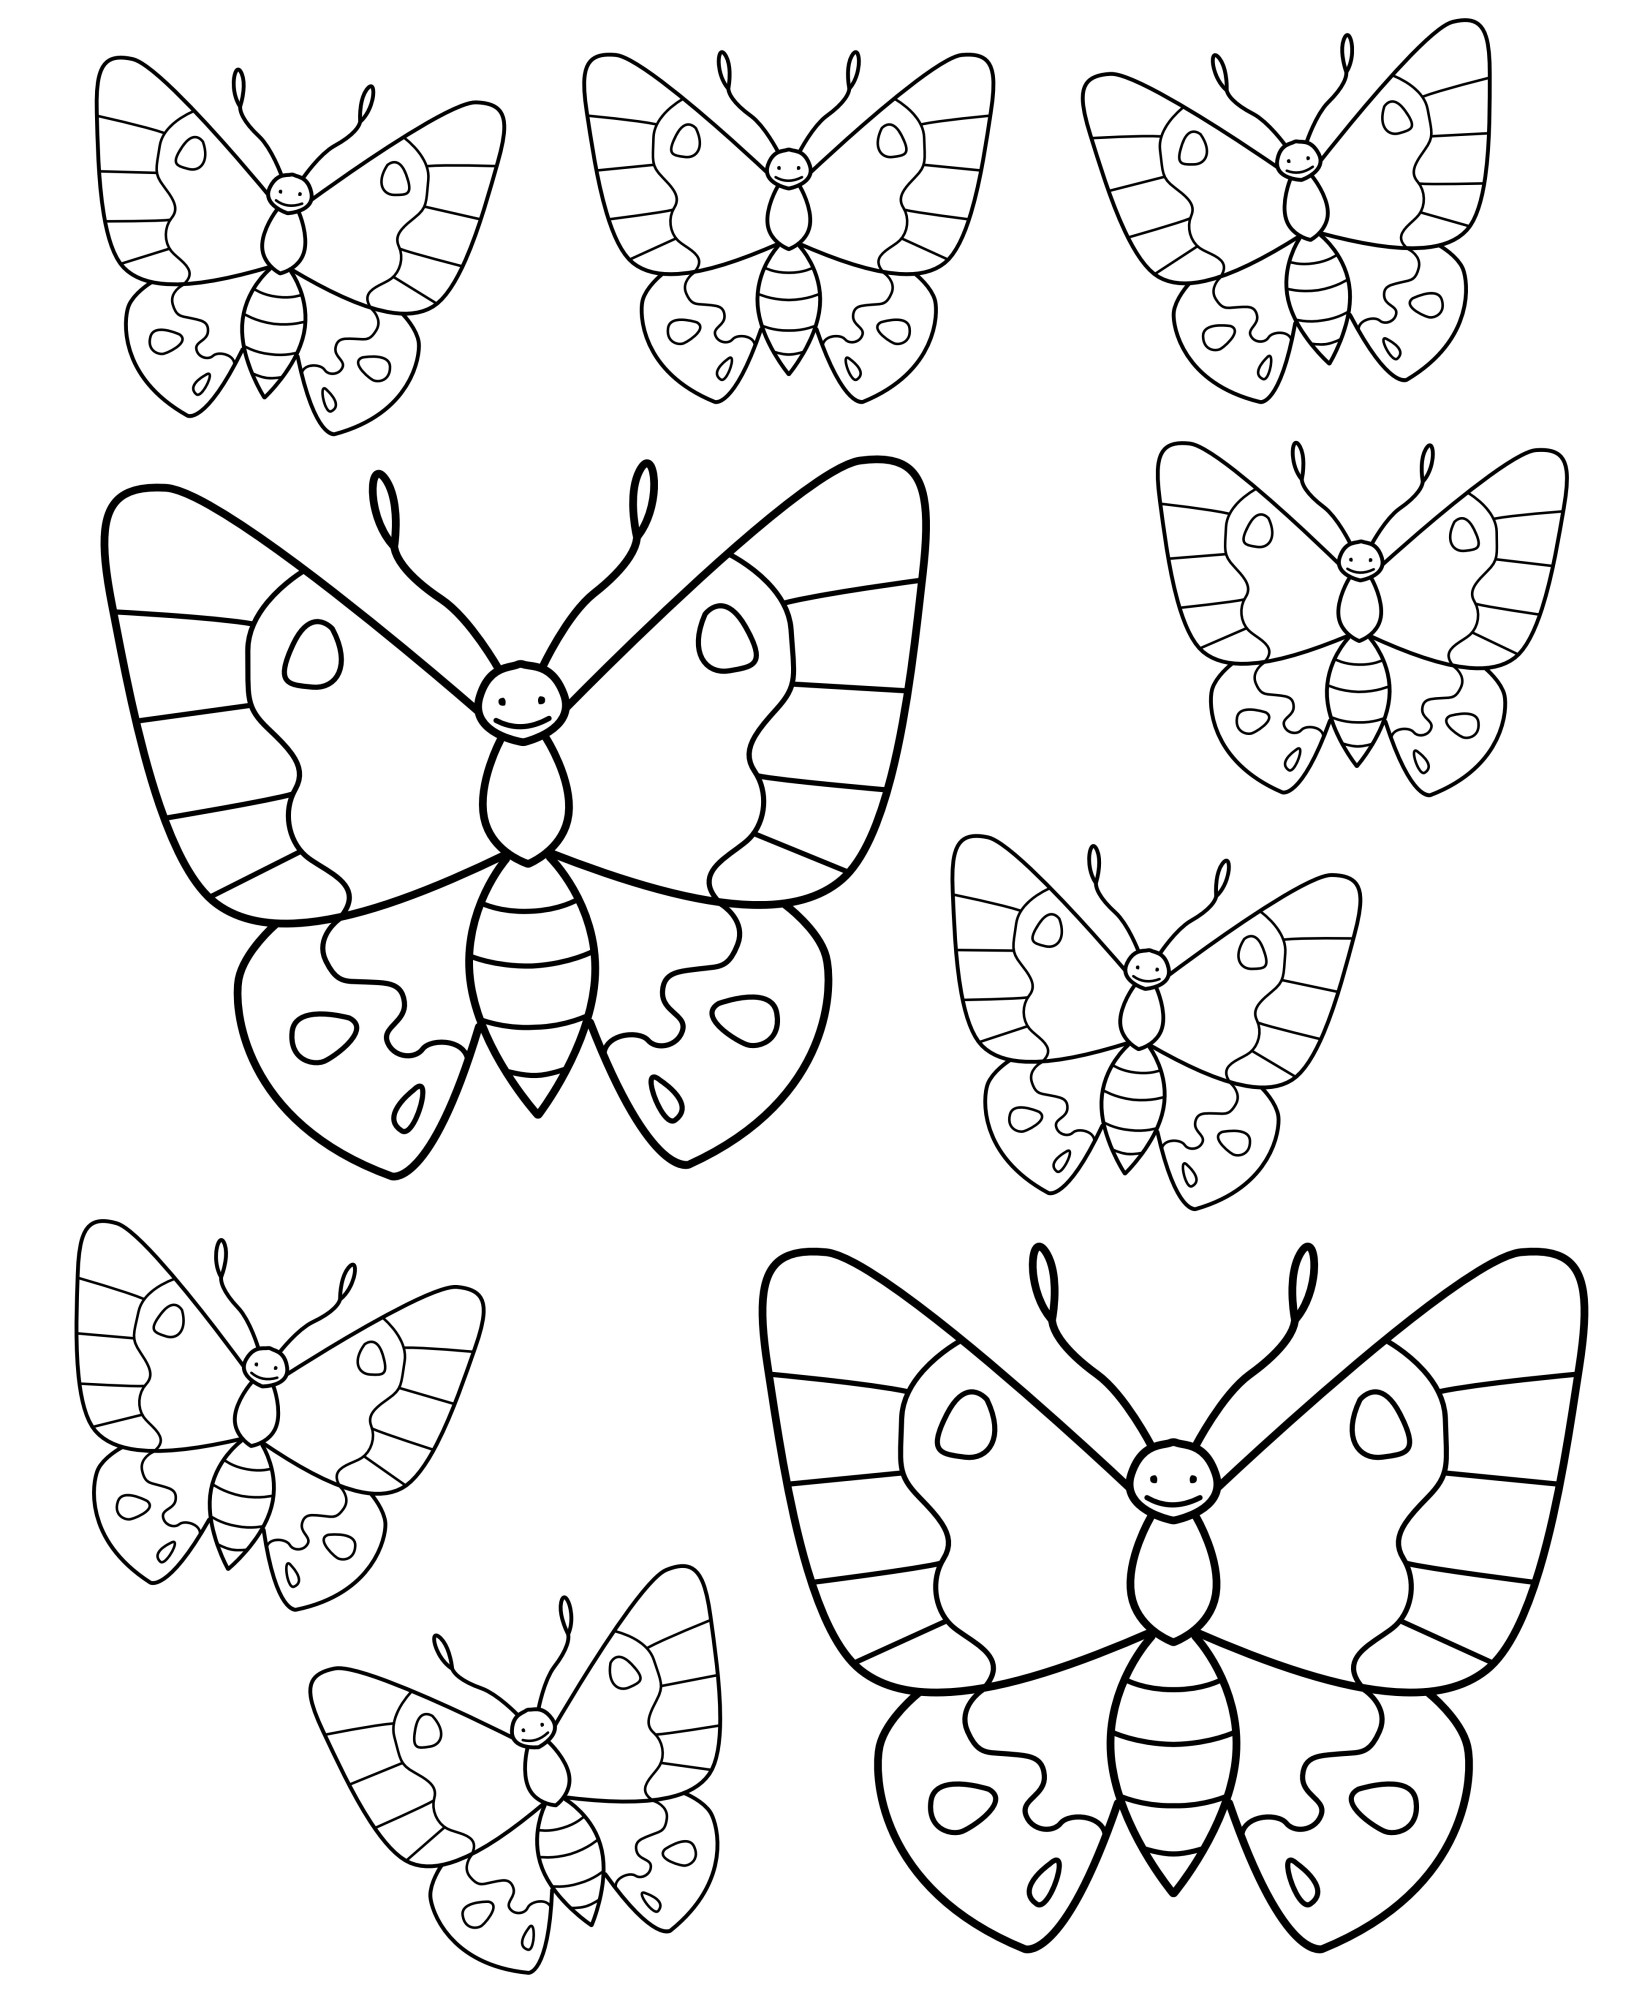 Раскраска для детей: много бабочек на листе